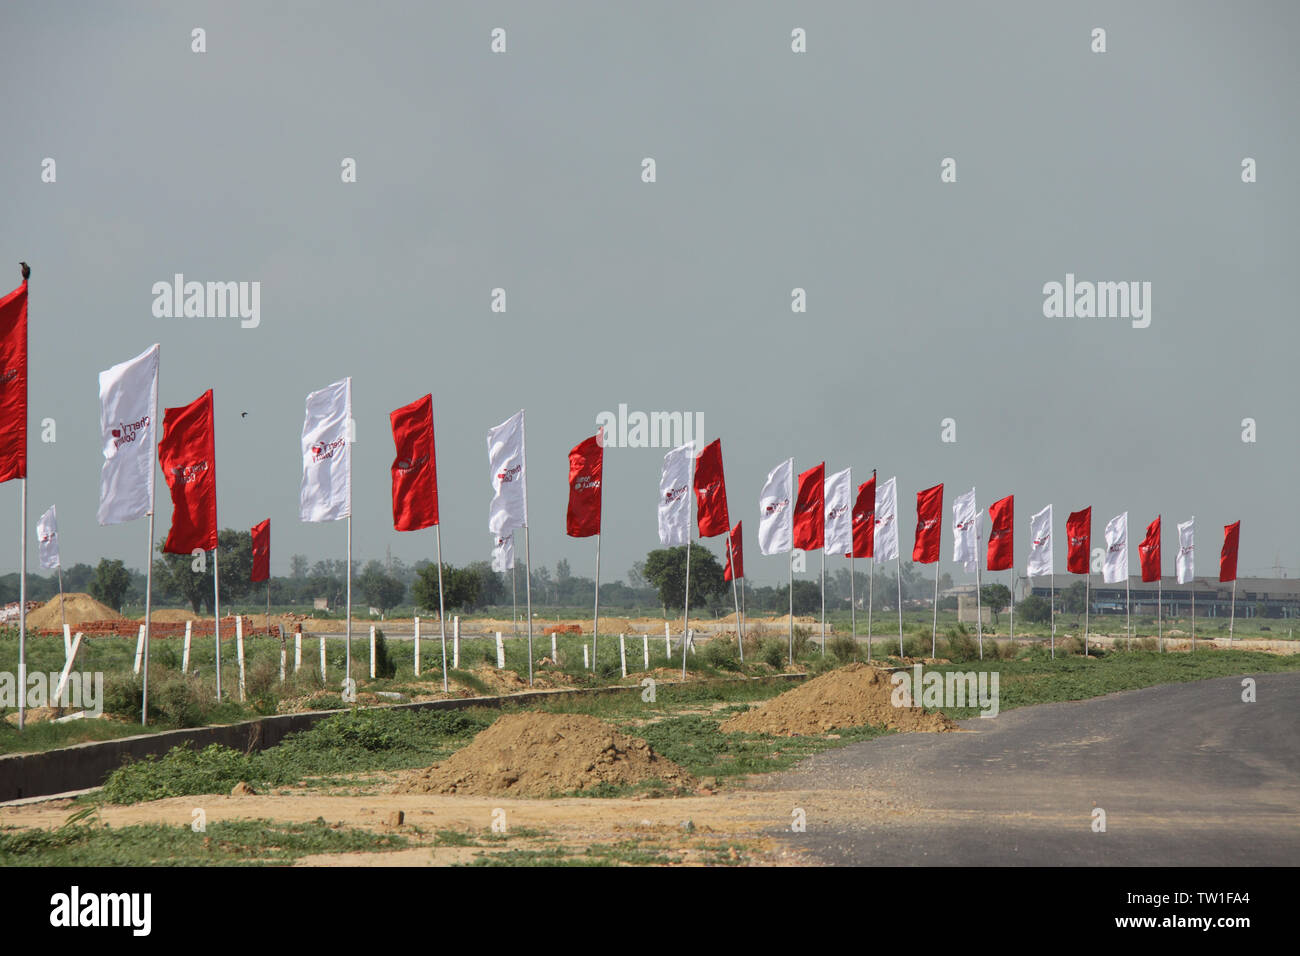 Rangée de drapeaux sur la route, Inde Banque D'Images